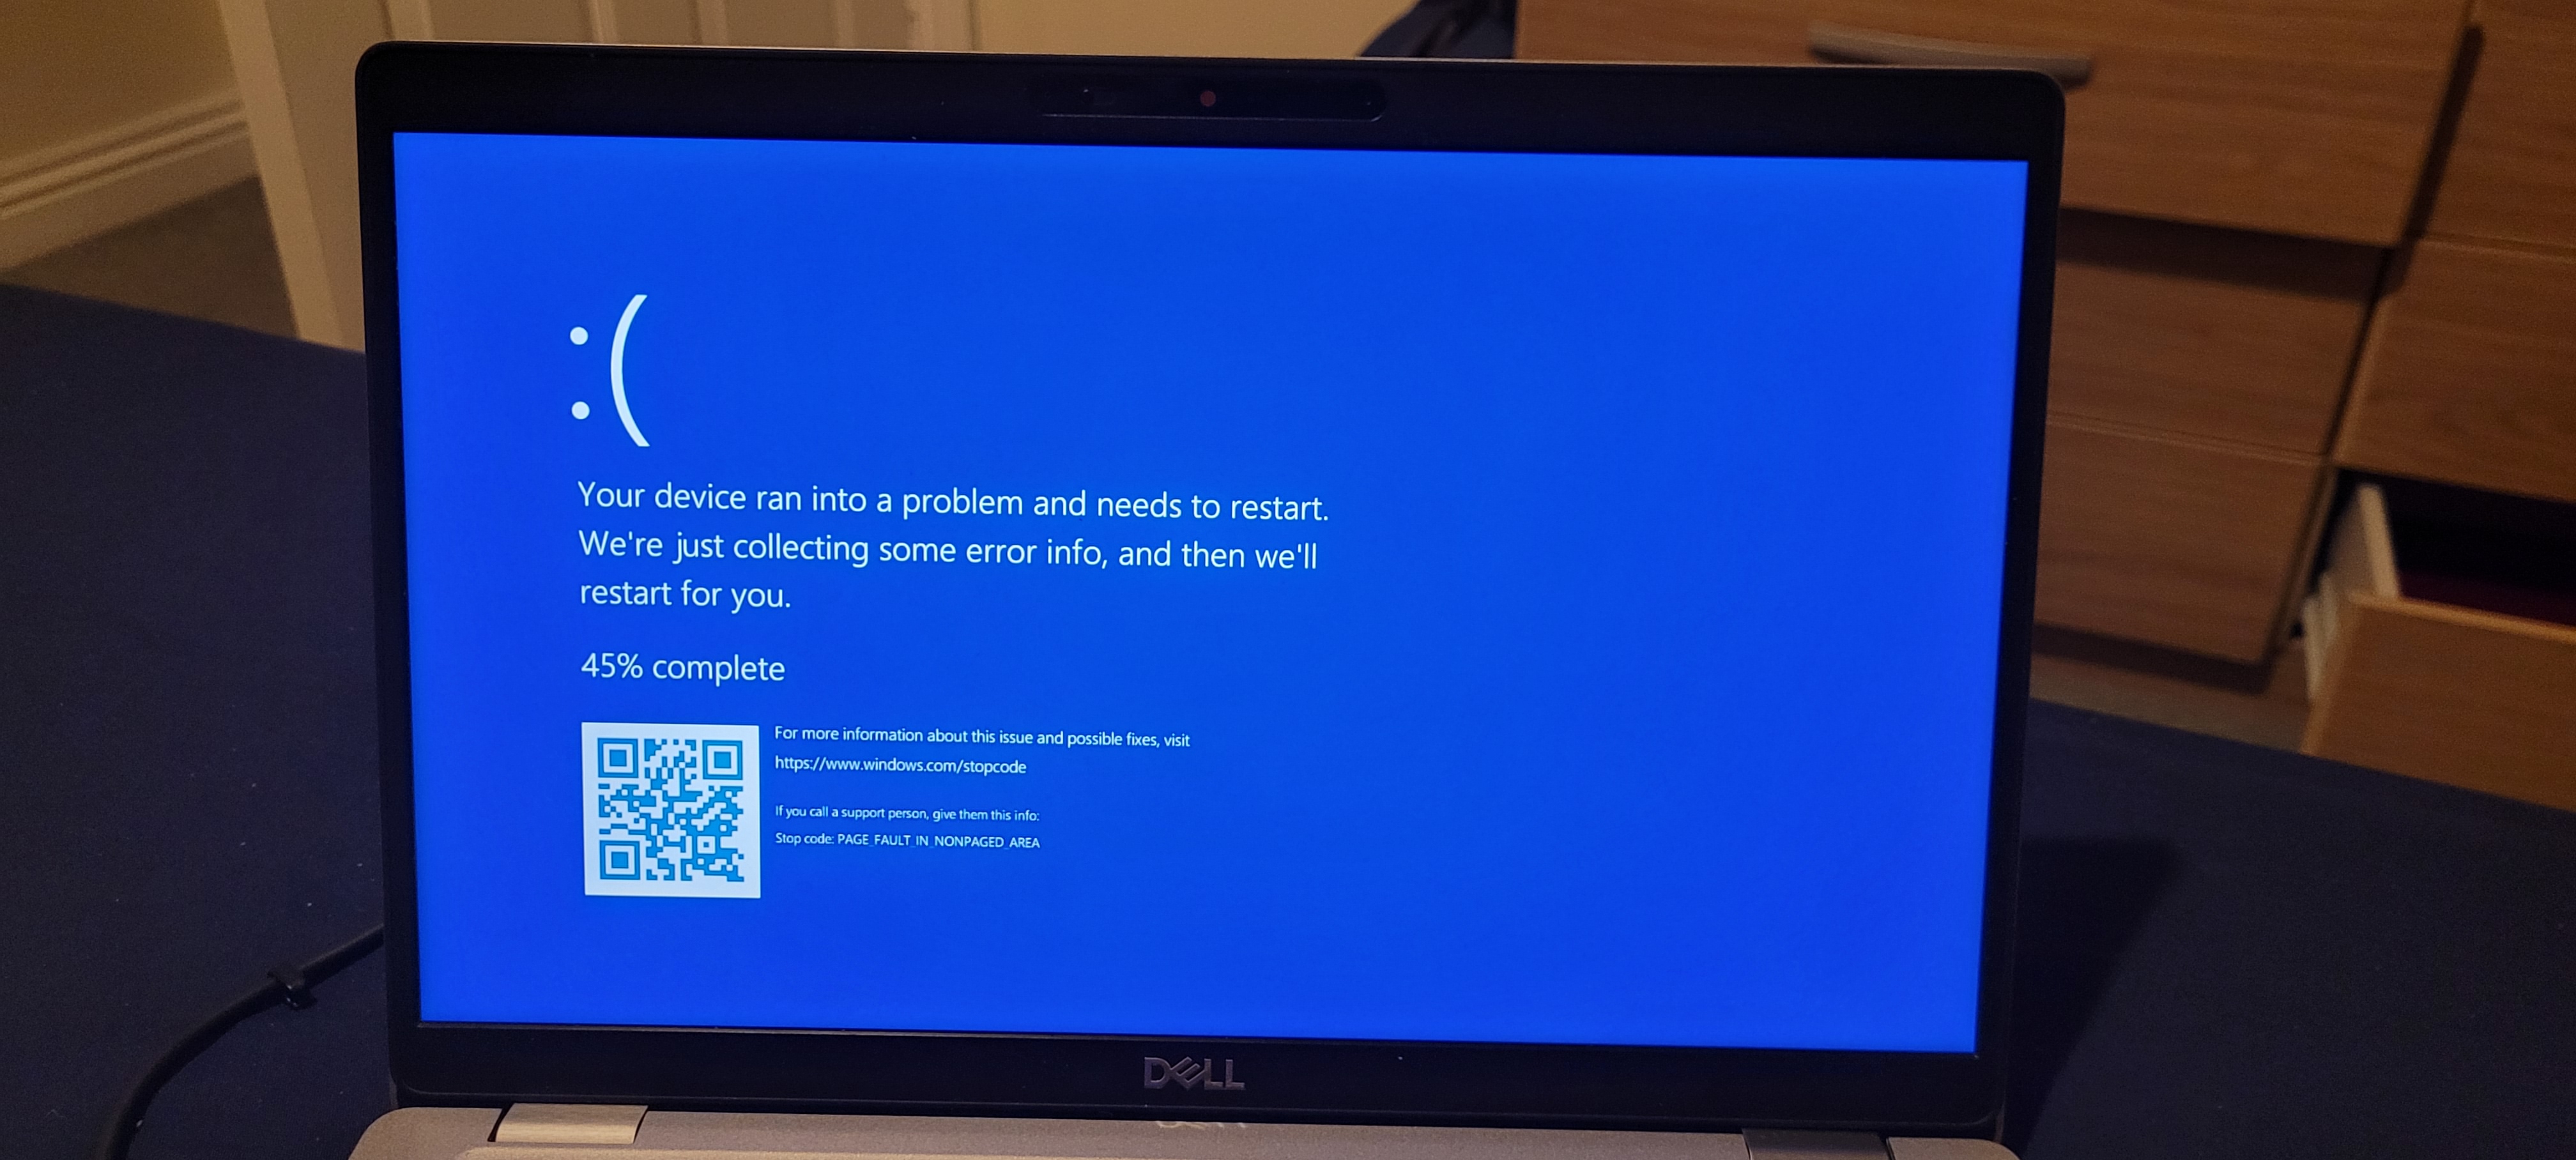 Dell blue screen error message